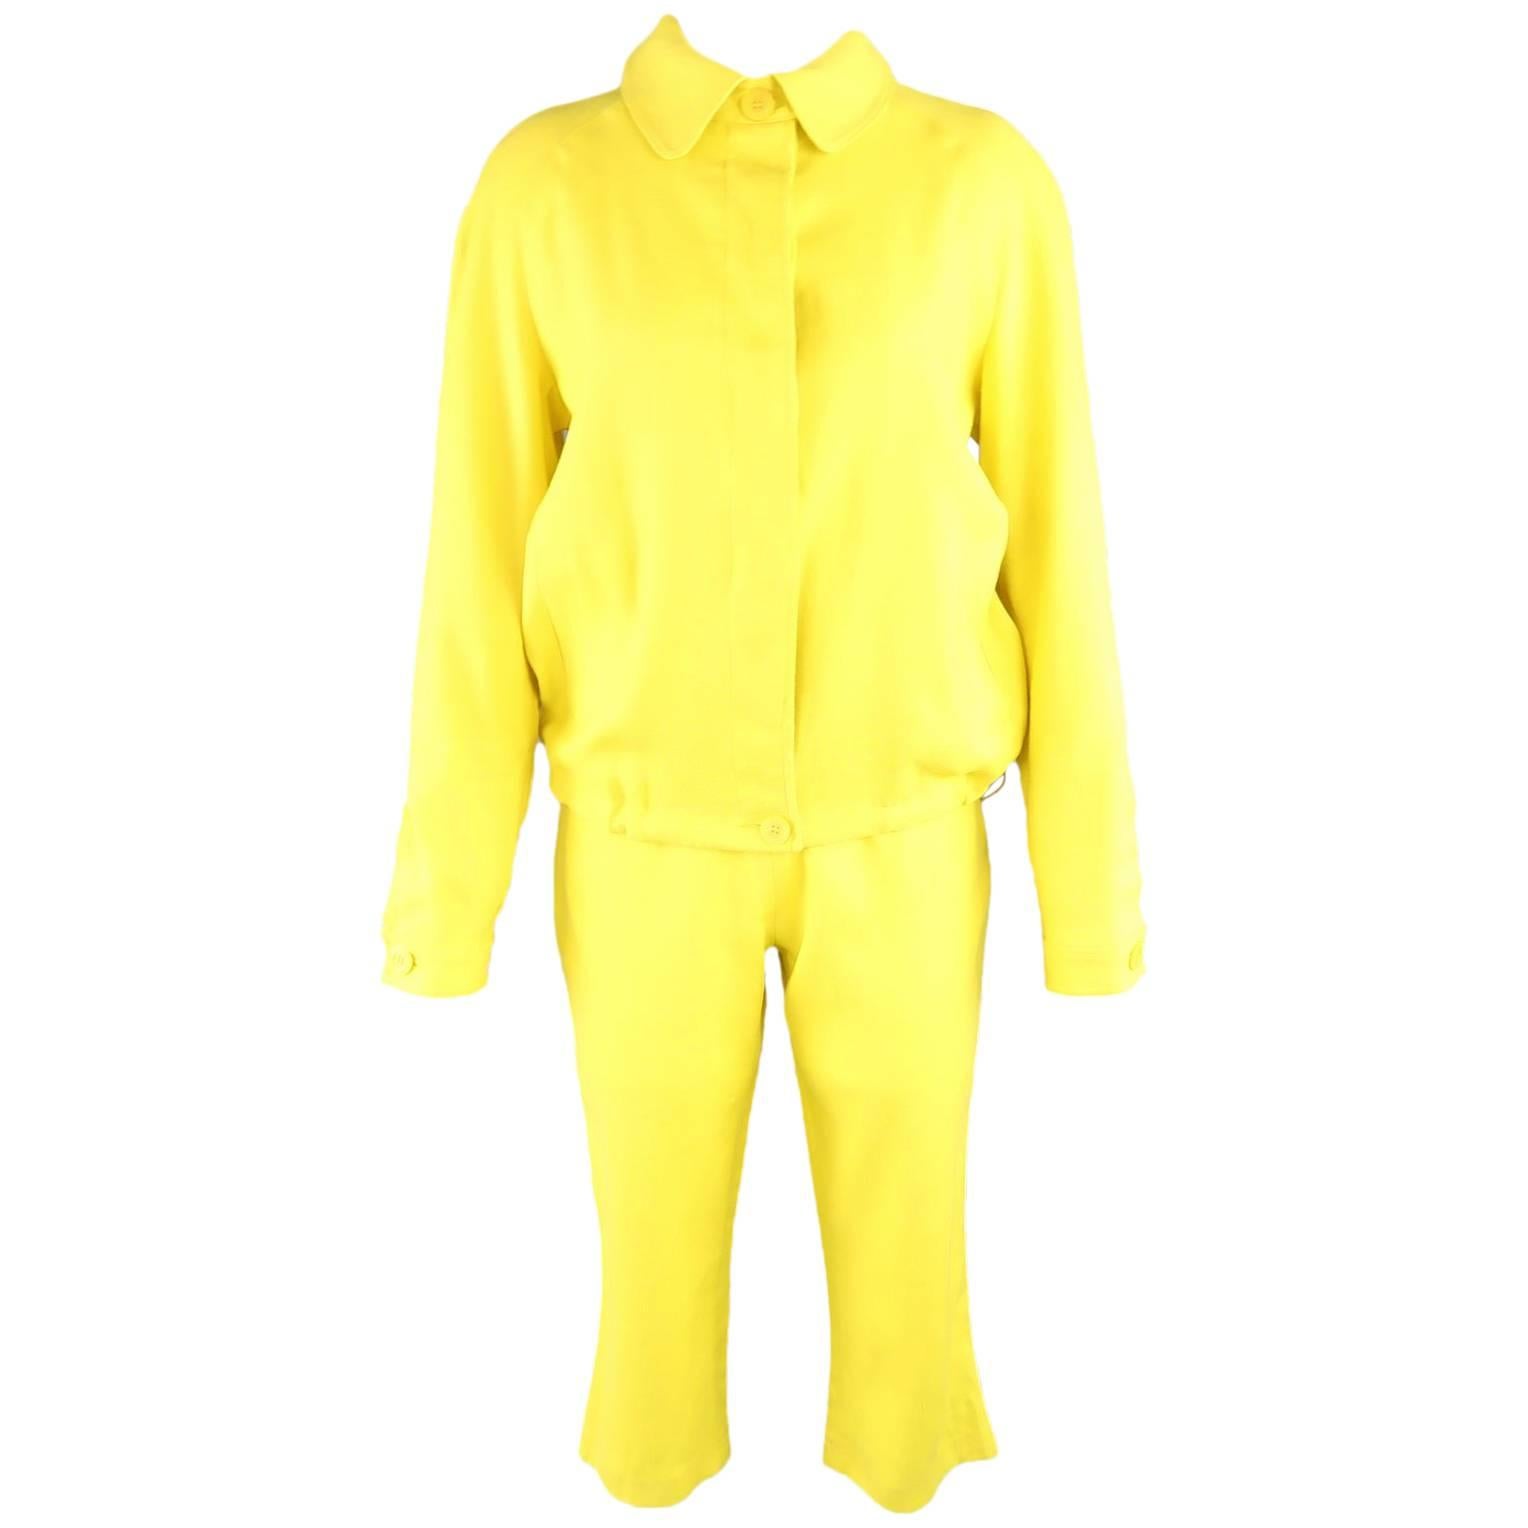 GIANFRANCO FERRE JEANS Size 8 Yellow Linen Blend Capri Pant Suit